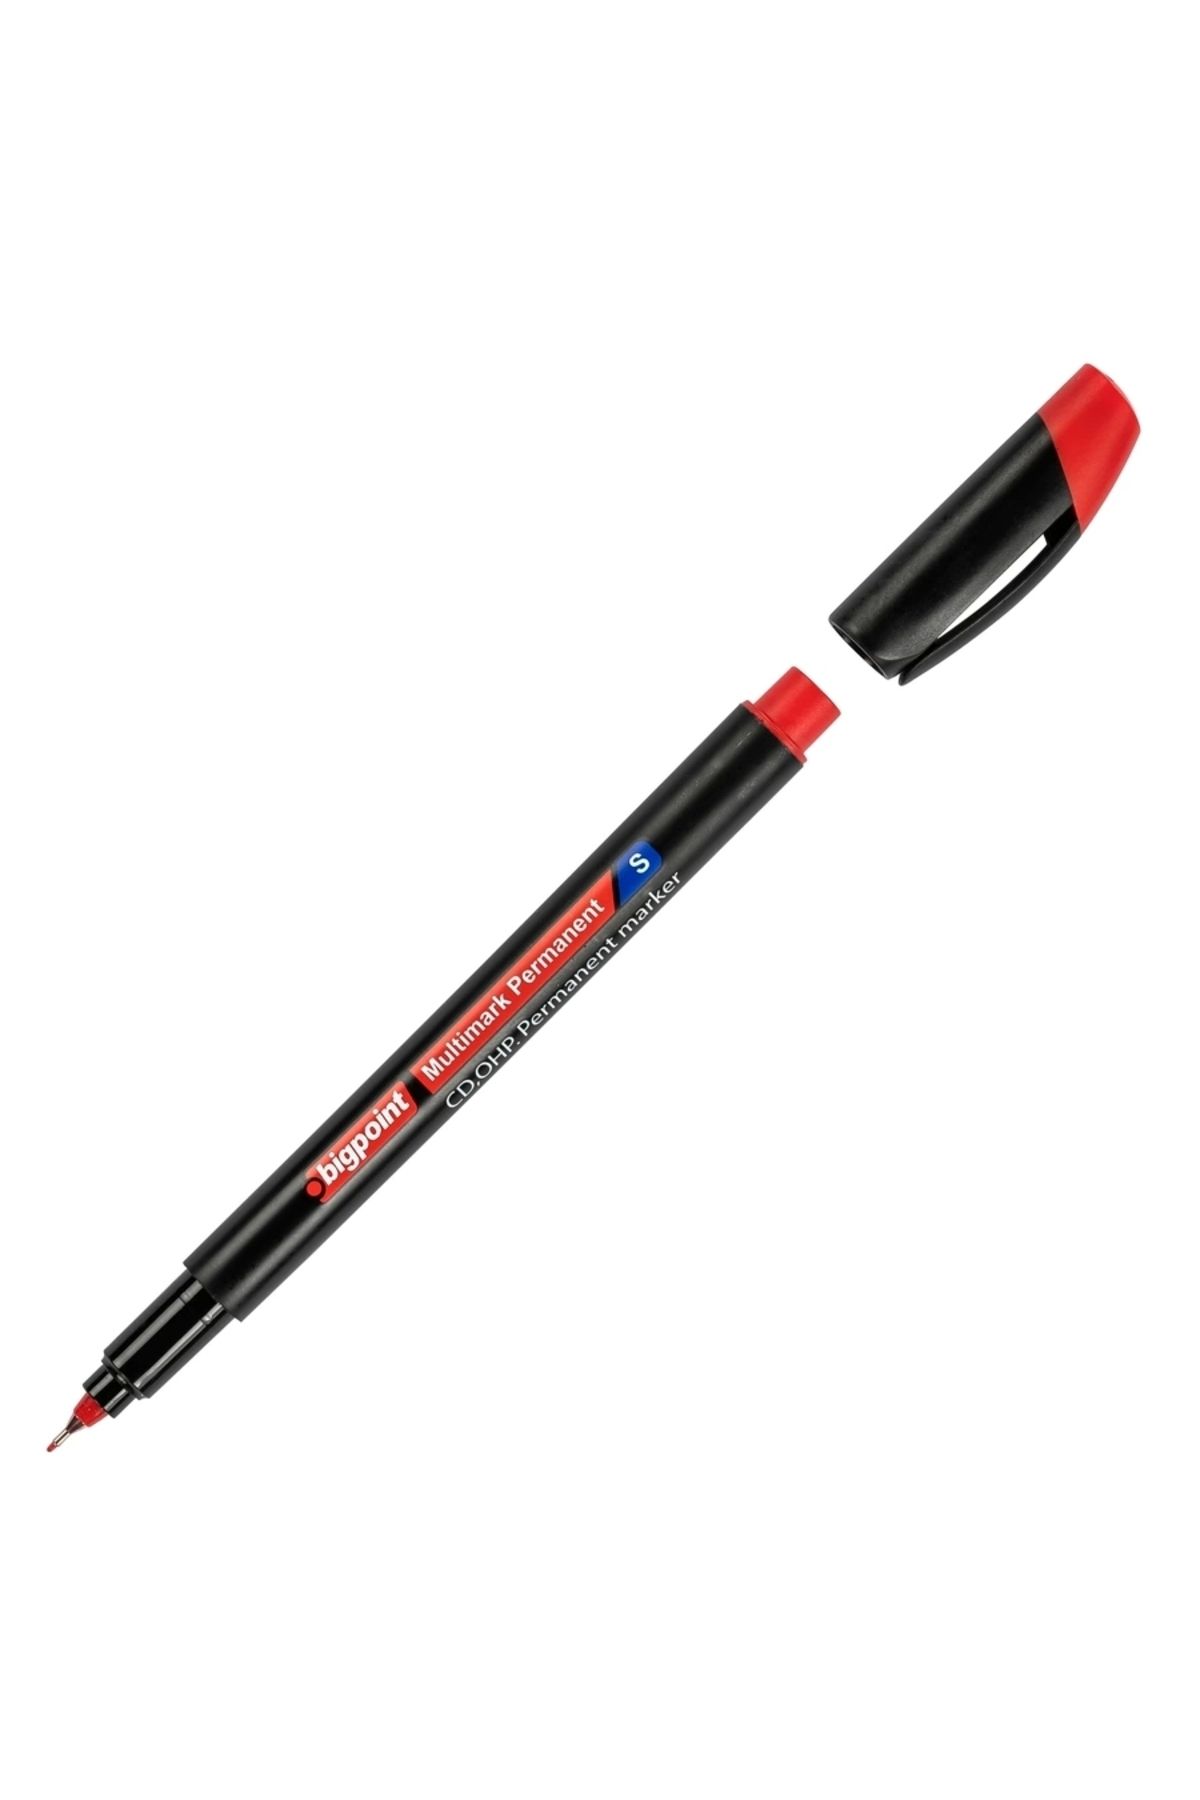 Bigpoint Ohp Permanent (ASETAT) Kalem S Kırmızı